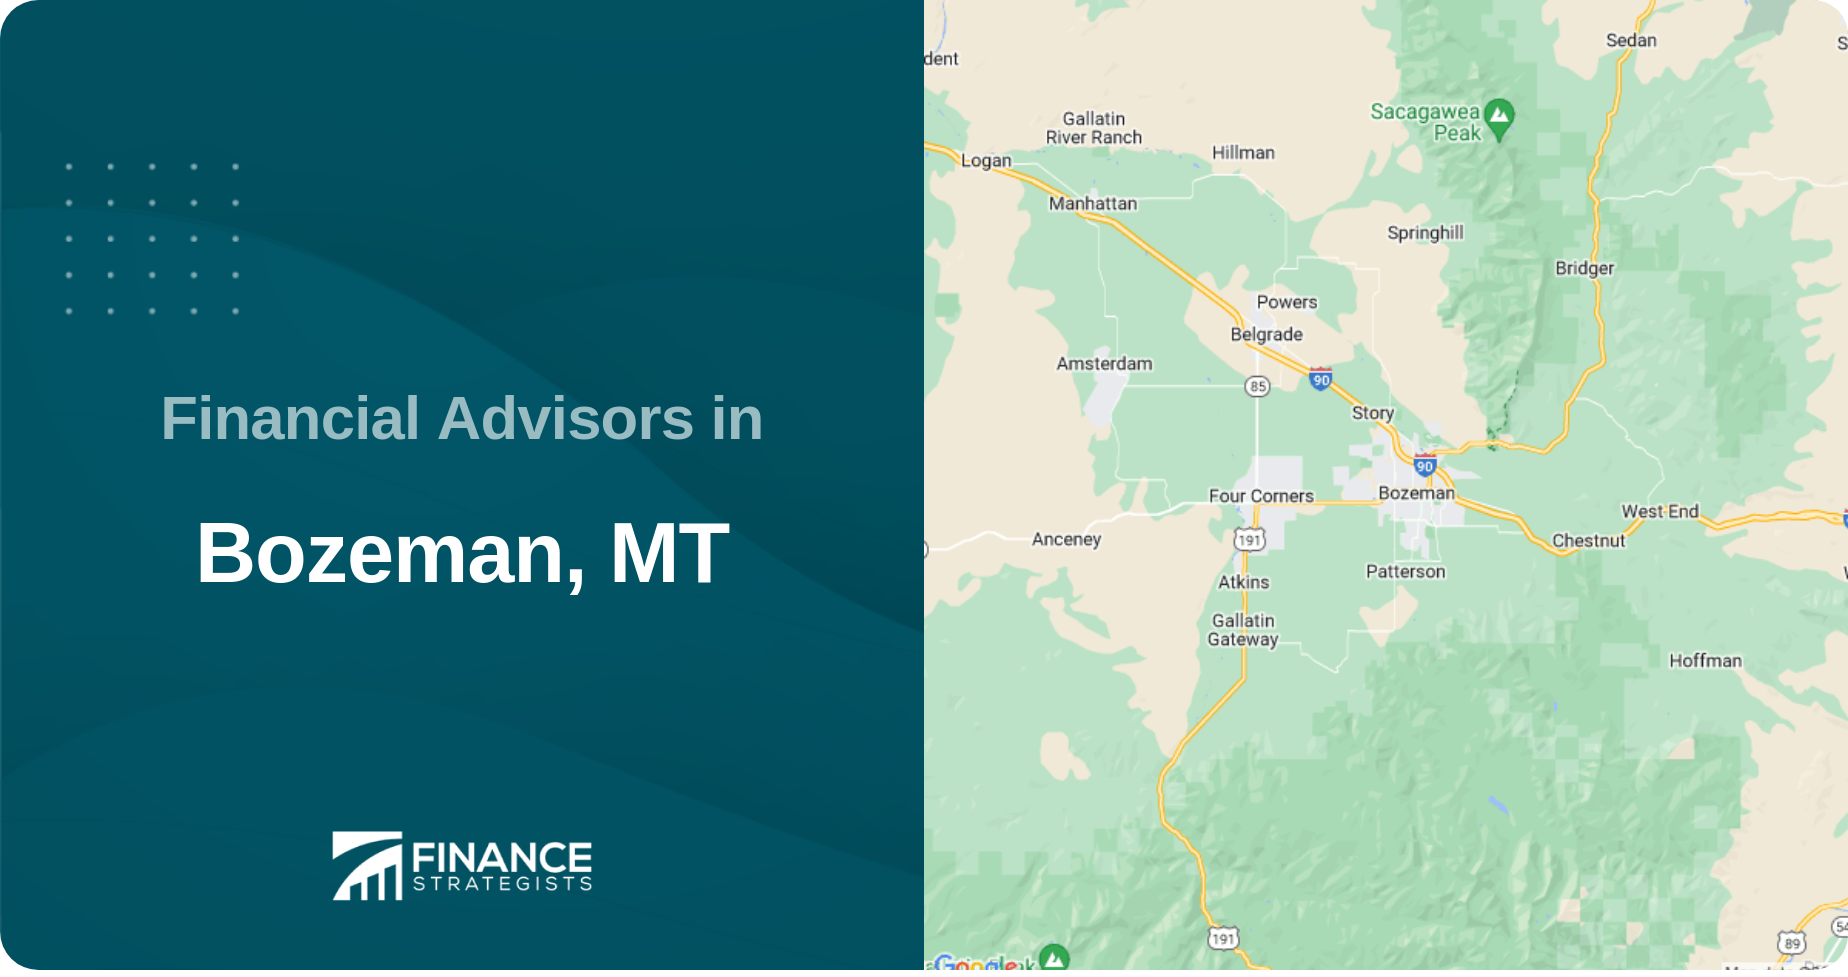 Financial Advisors in Bozeman, MT